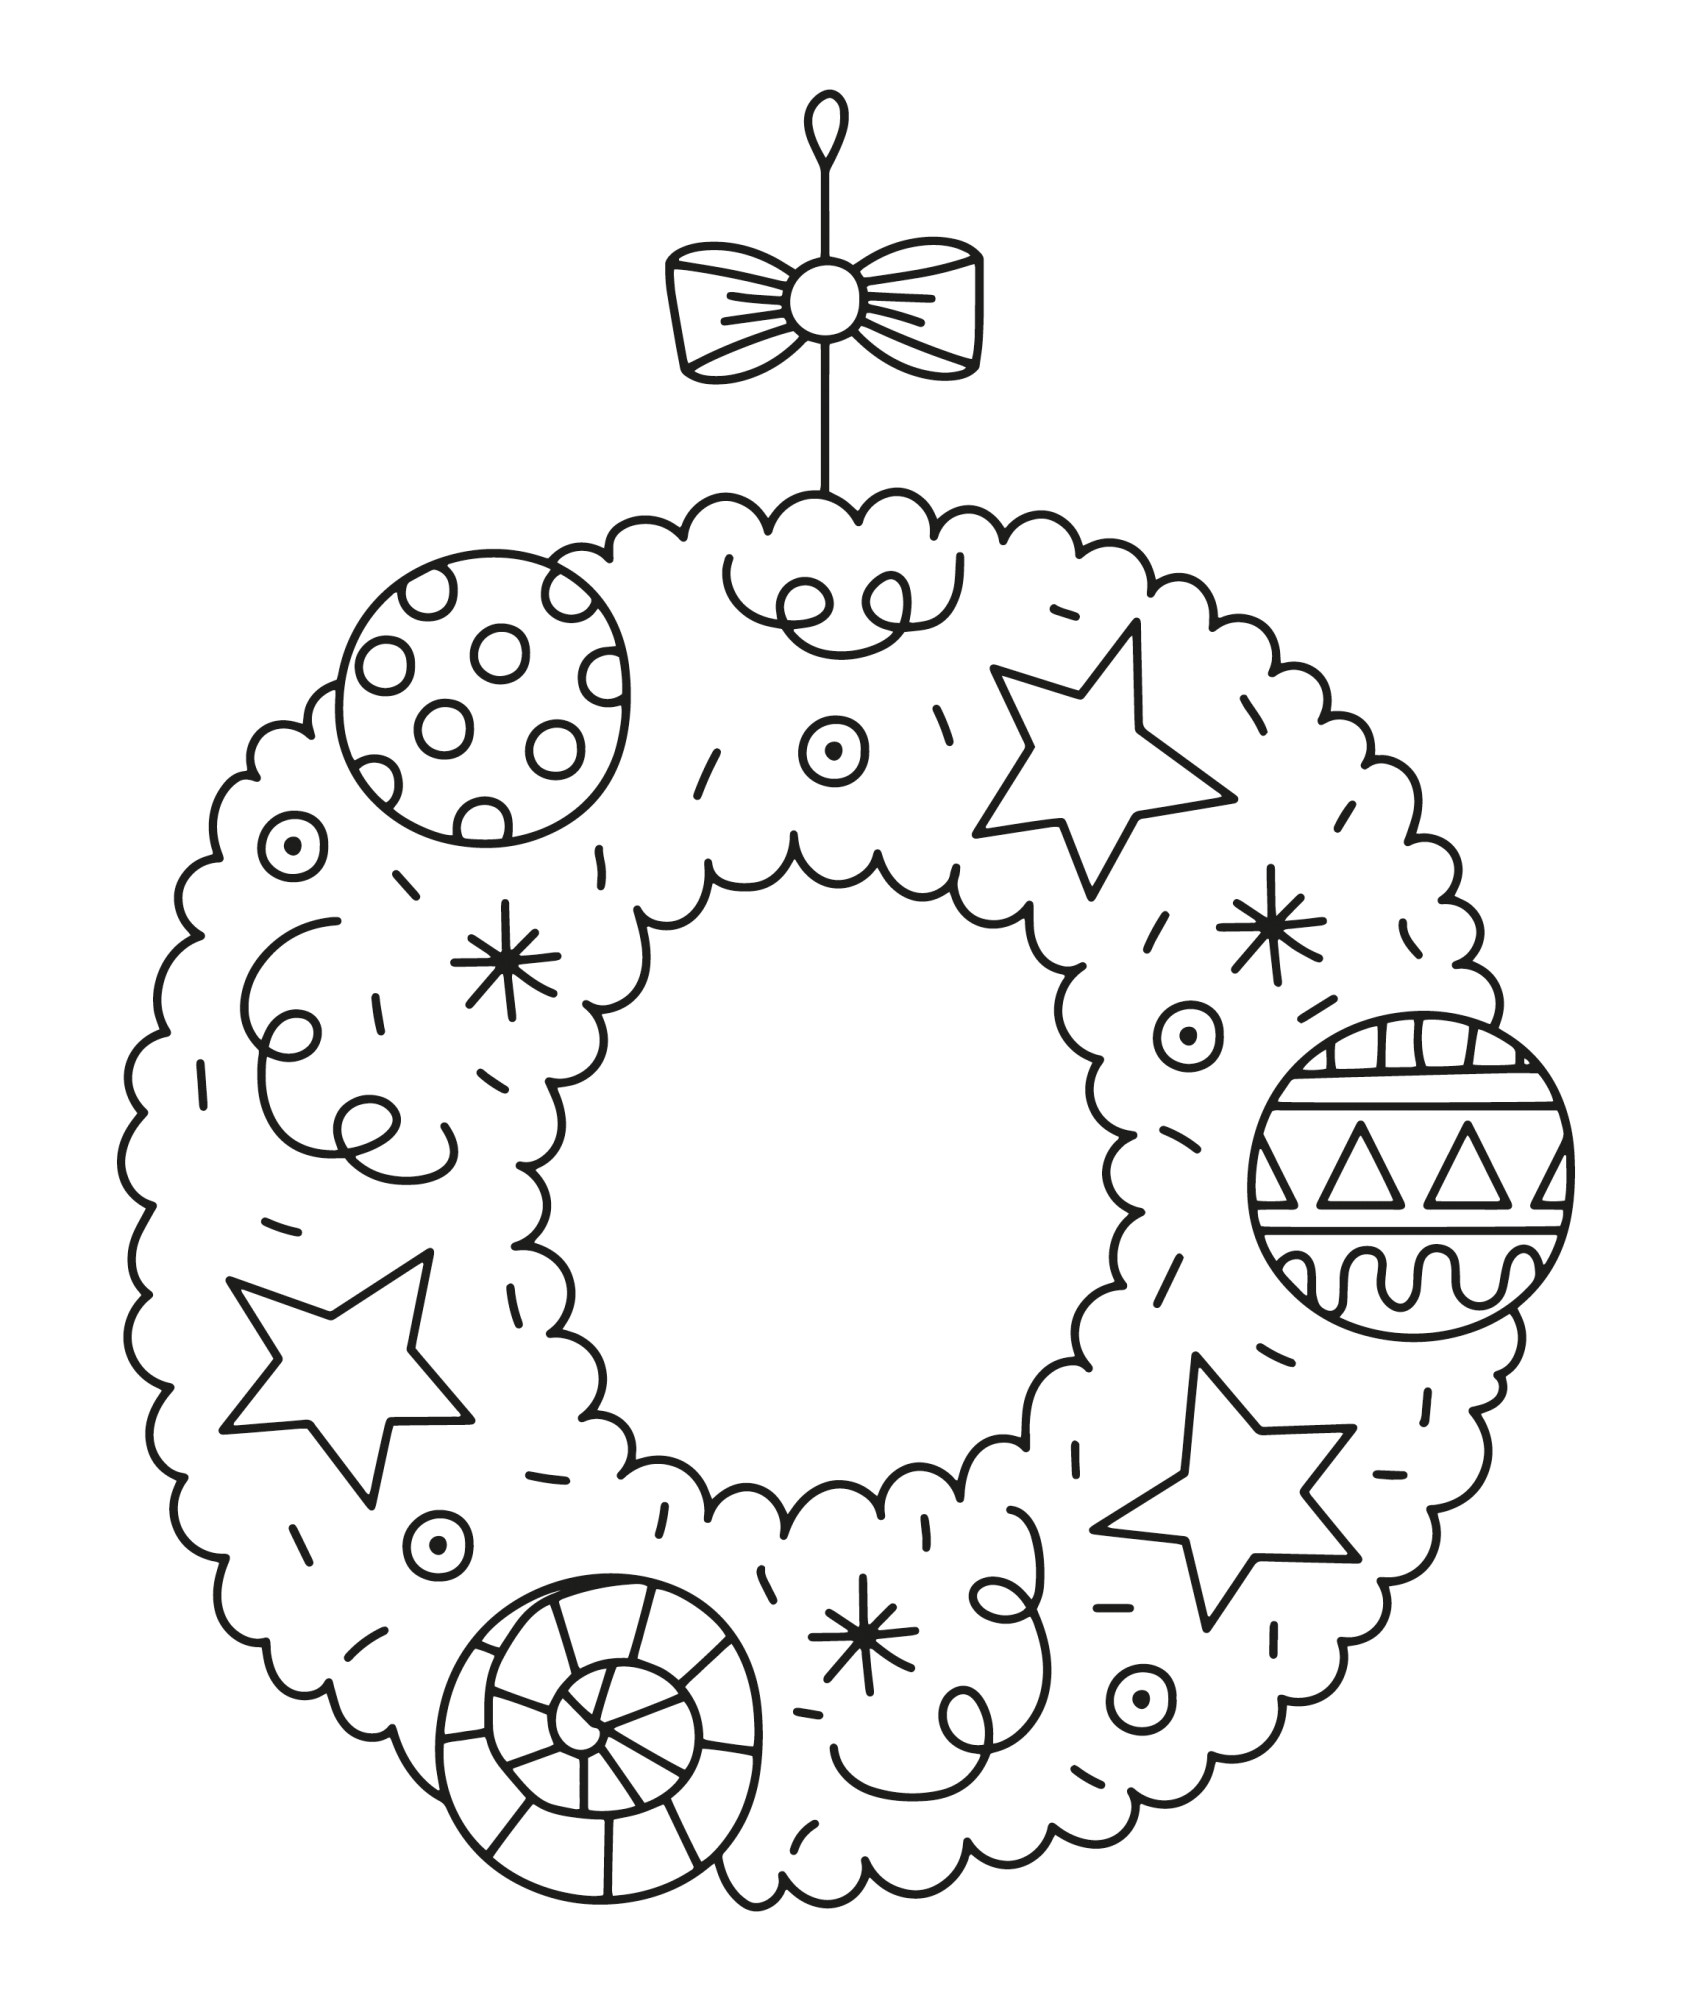 Раскраска для детей: новогоднее украшение с шарами и звездочками